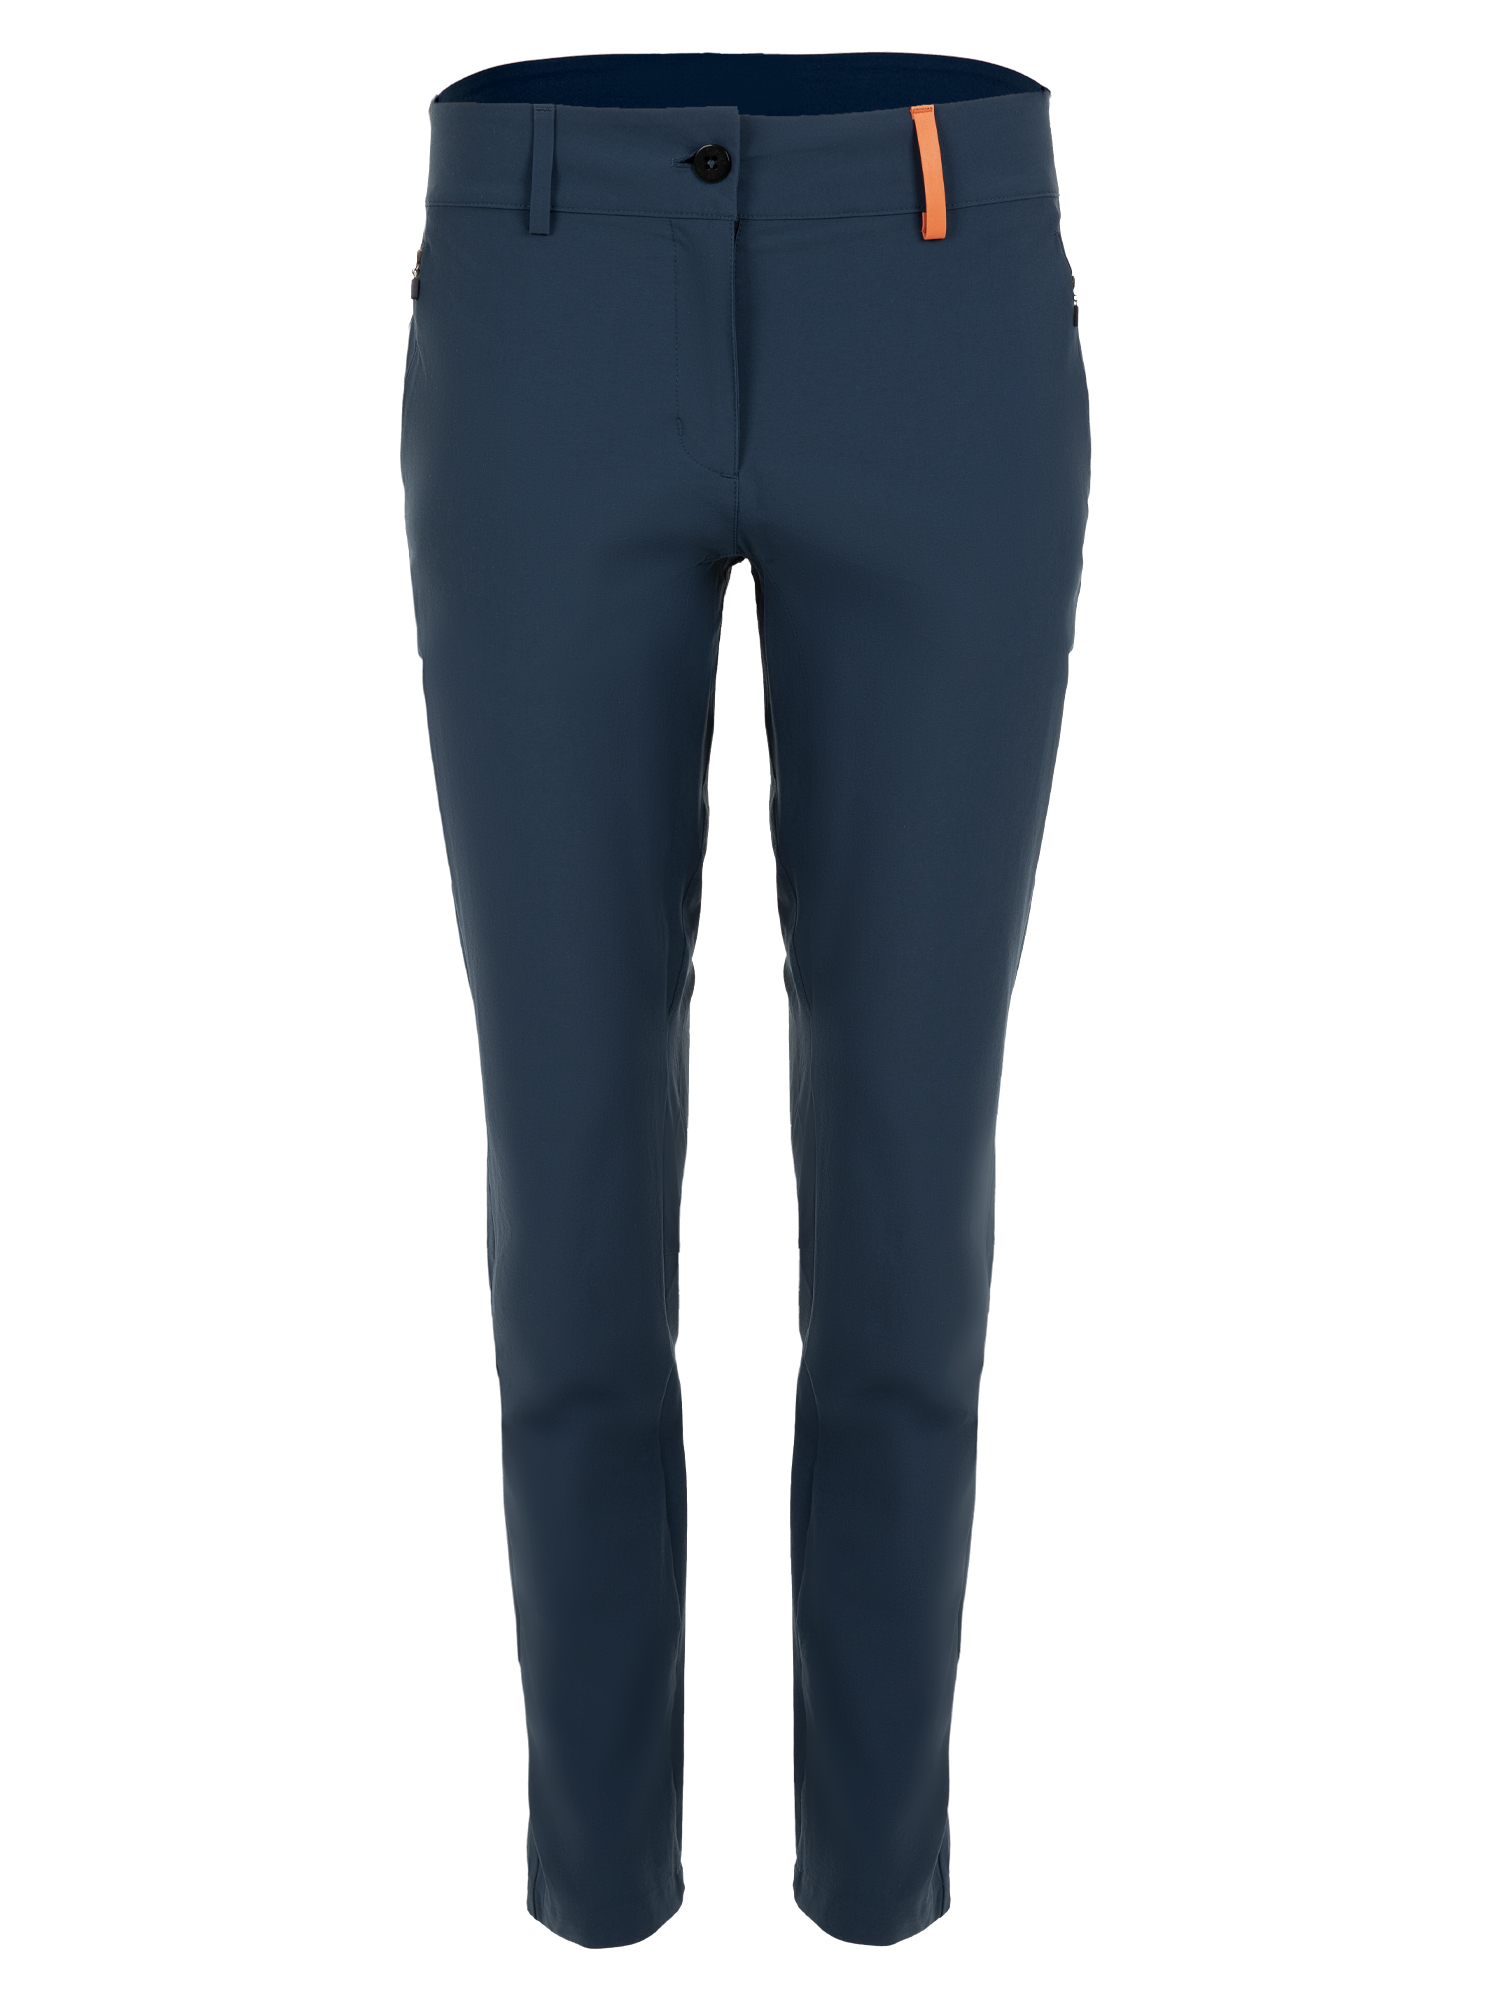 Спортивные брюки женские Ternua Nova Pt W синие XL